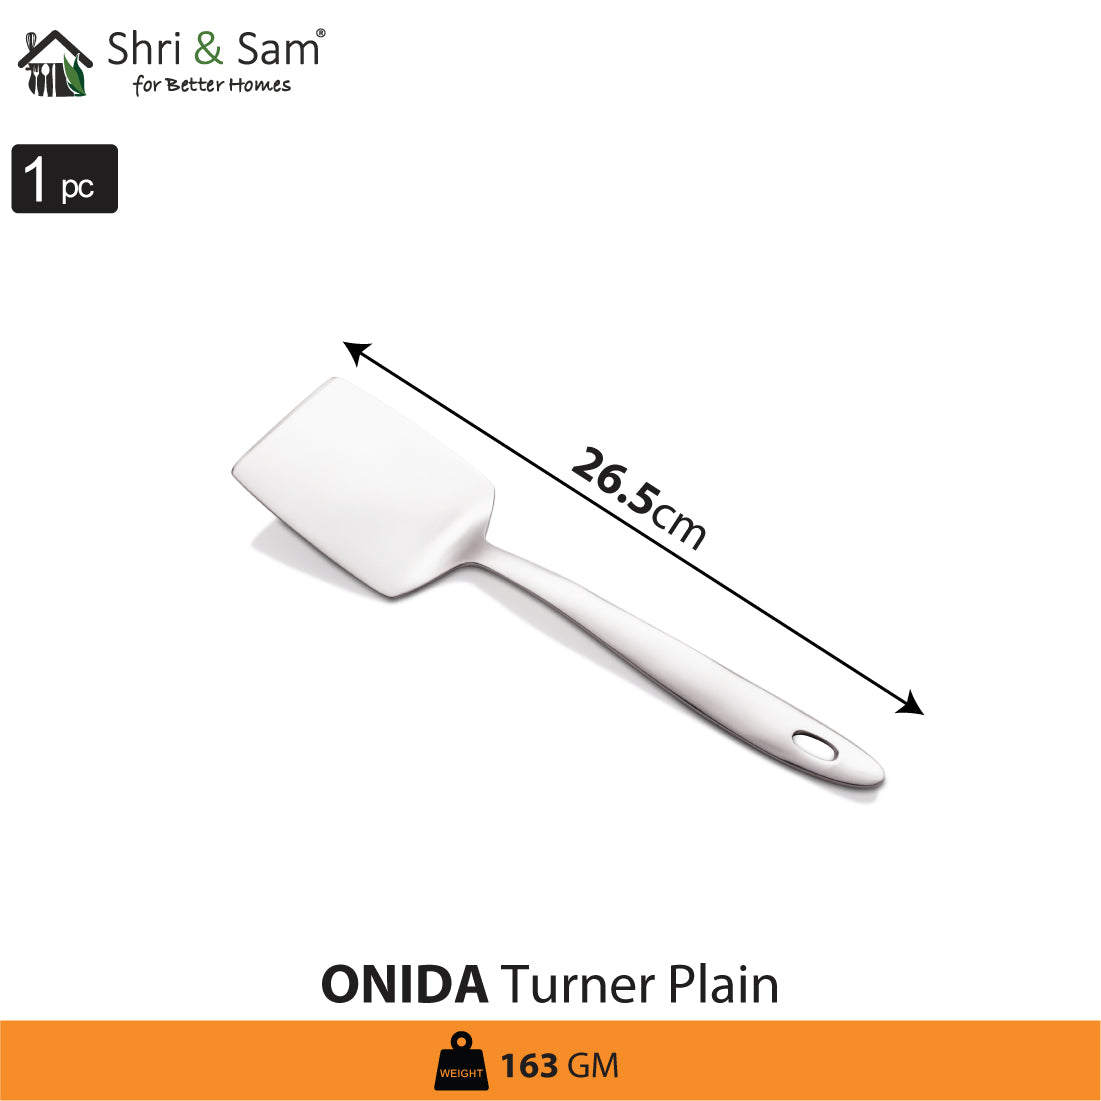 Stainless Steel Turner Plain Onida